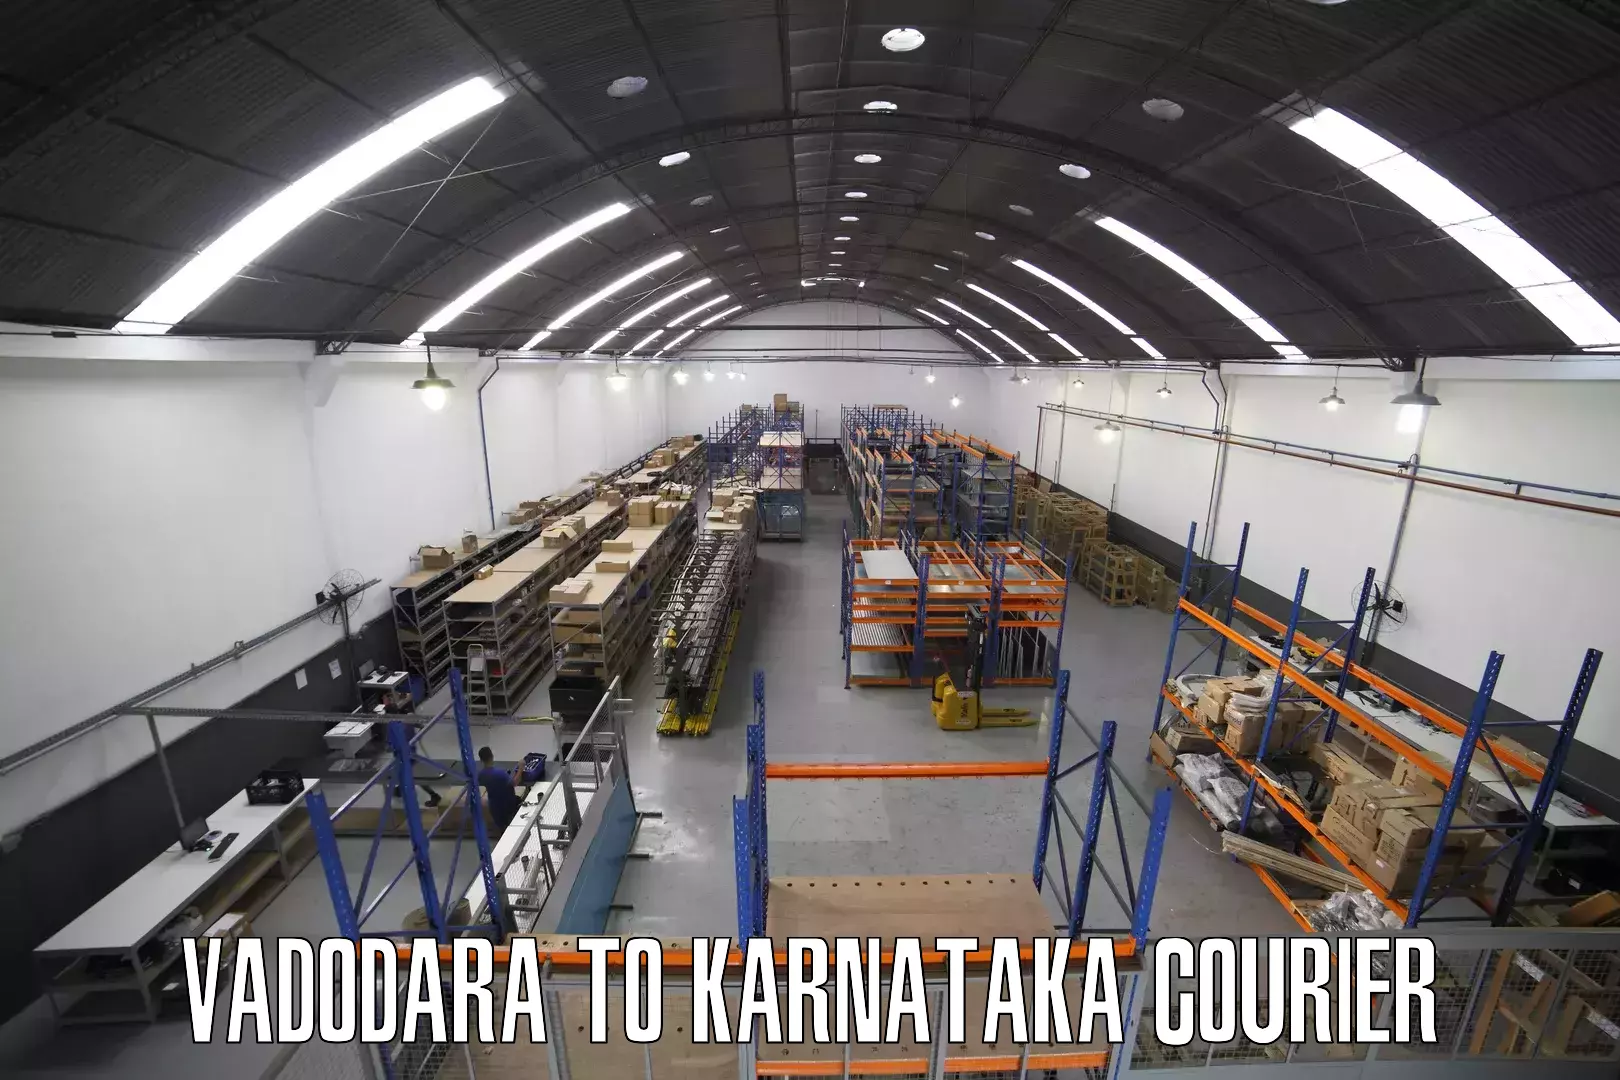 High-capacity parcel service Vadodara to Pavagada